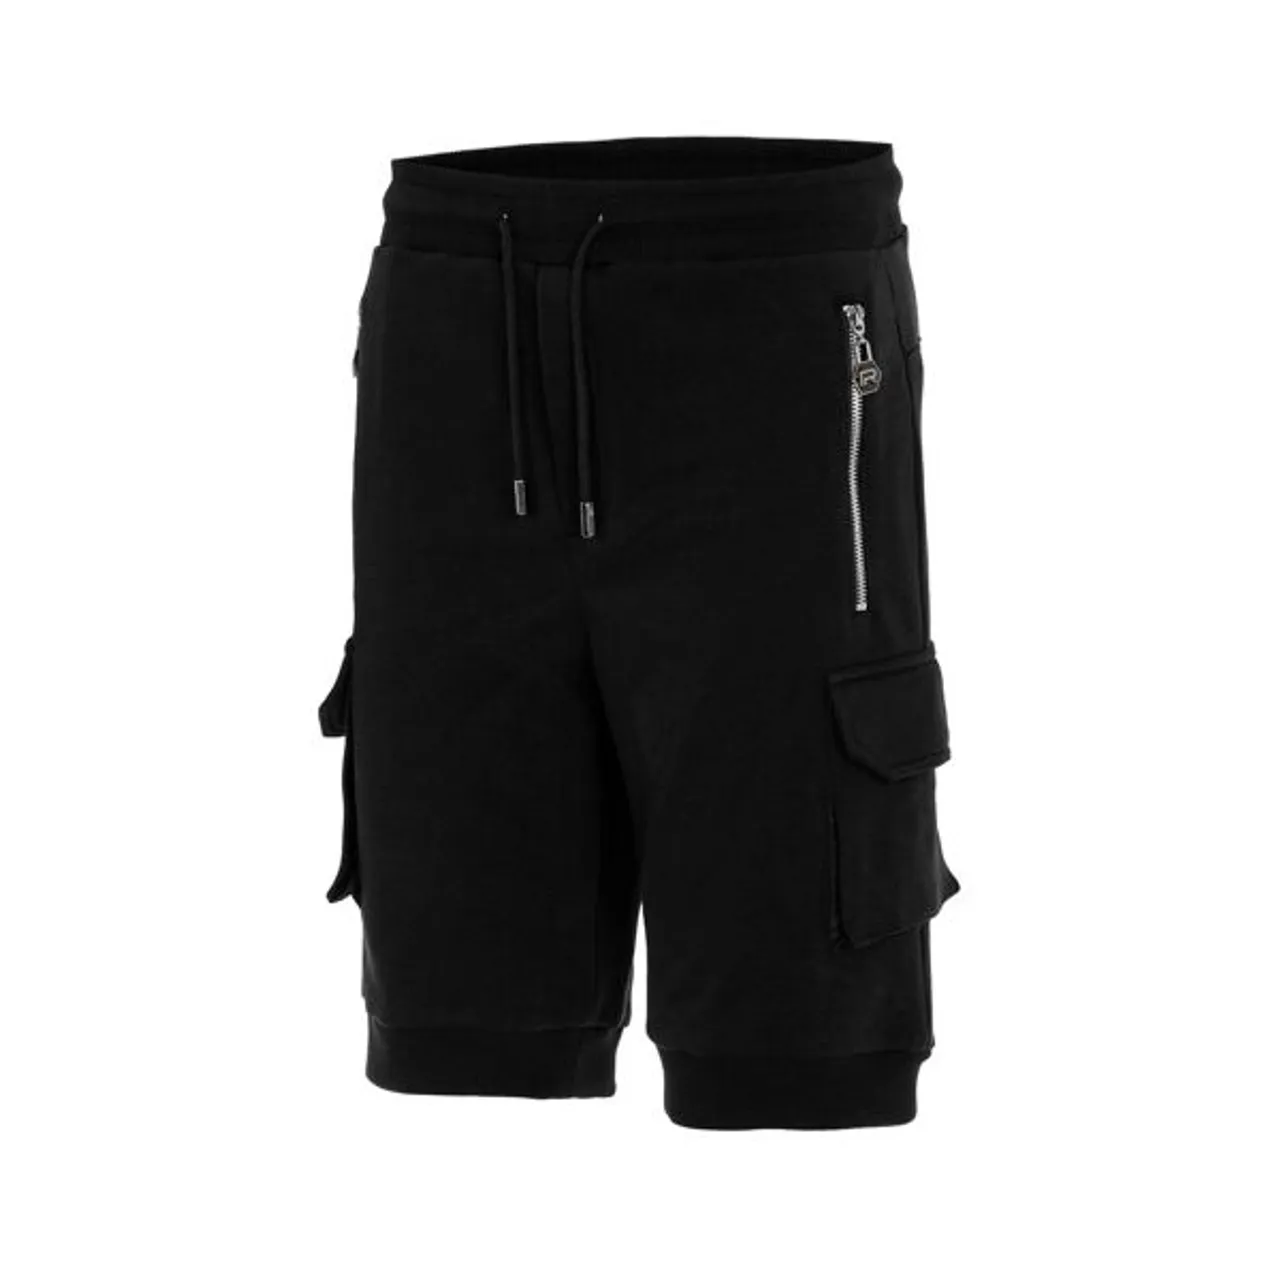 Shorts REDBRIDGE Gr. M, EURO-Größen, schwarz Herren Hosen Shorts